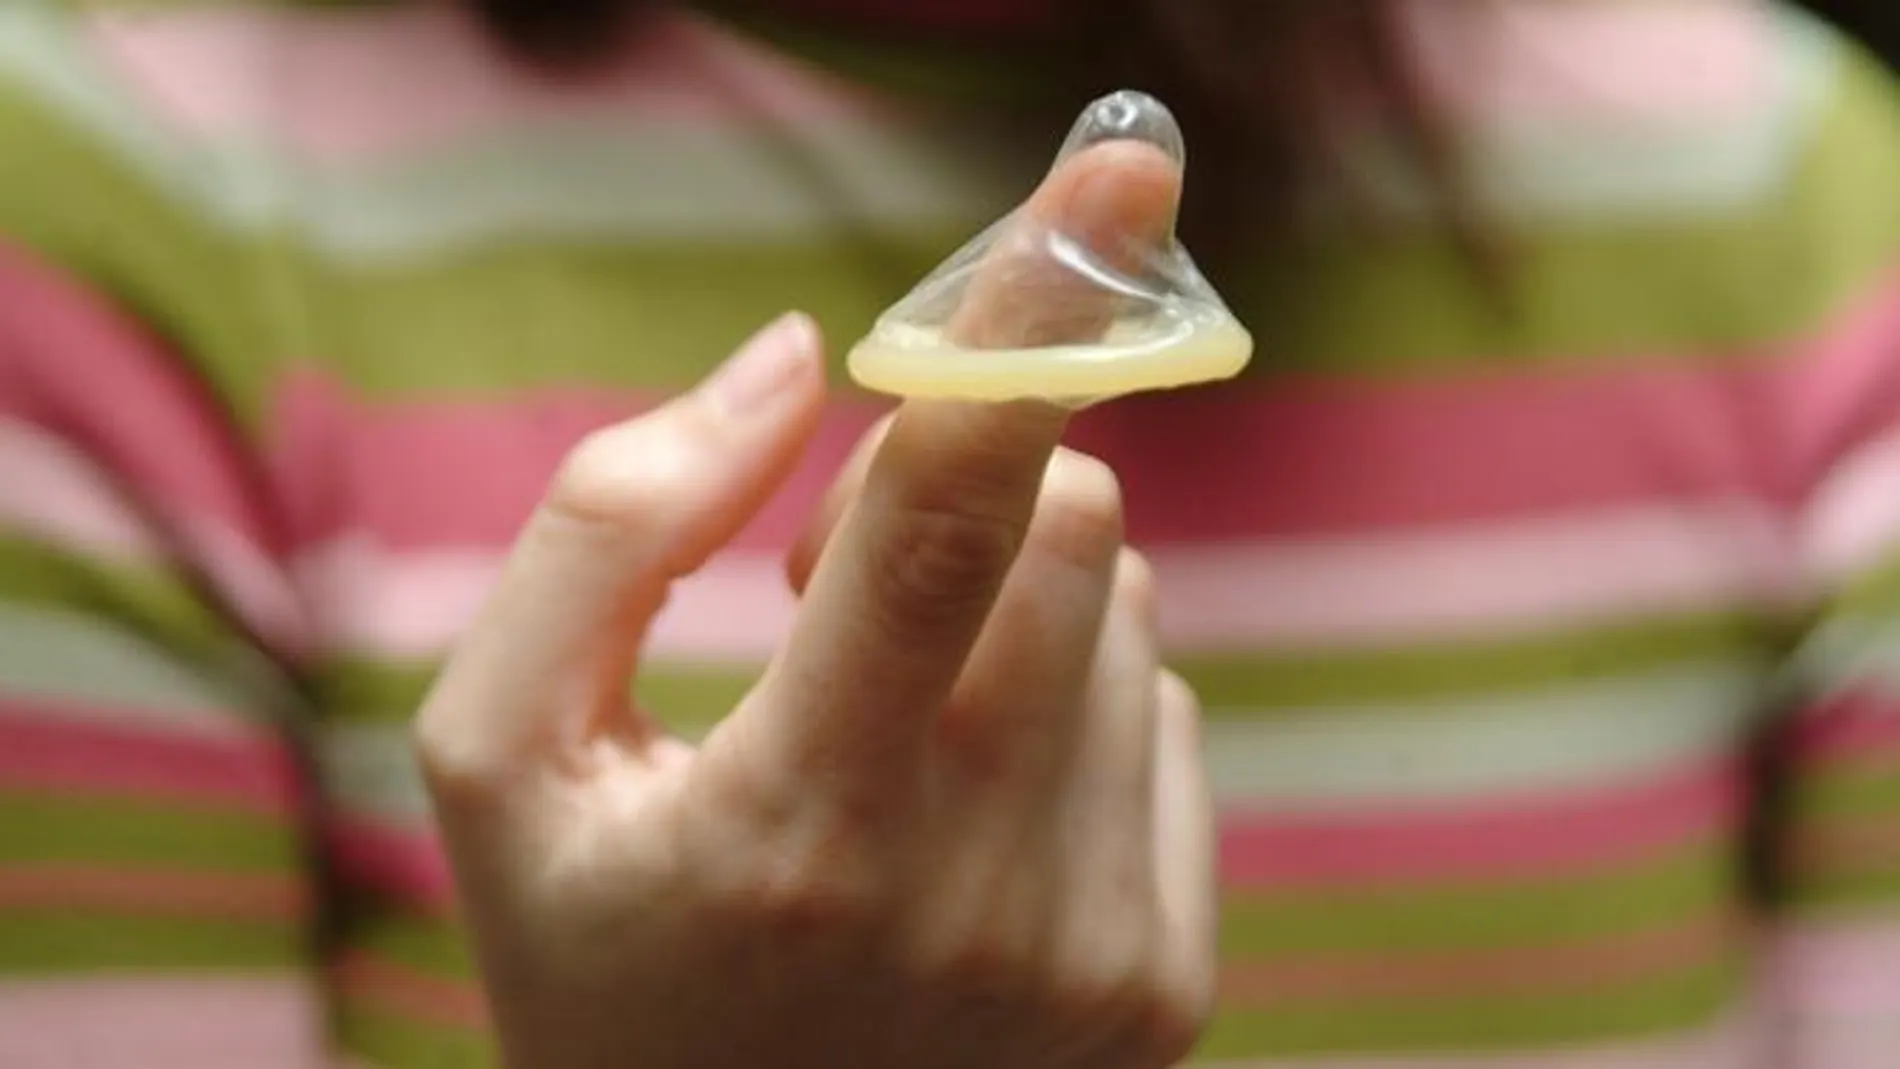 Una empresaria sevillana patenta un preservativo fácil de colocar